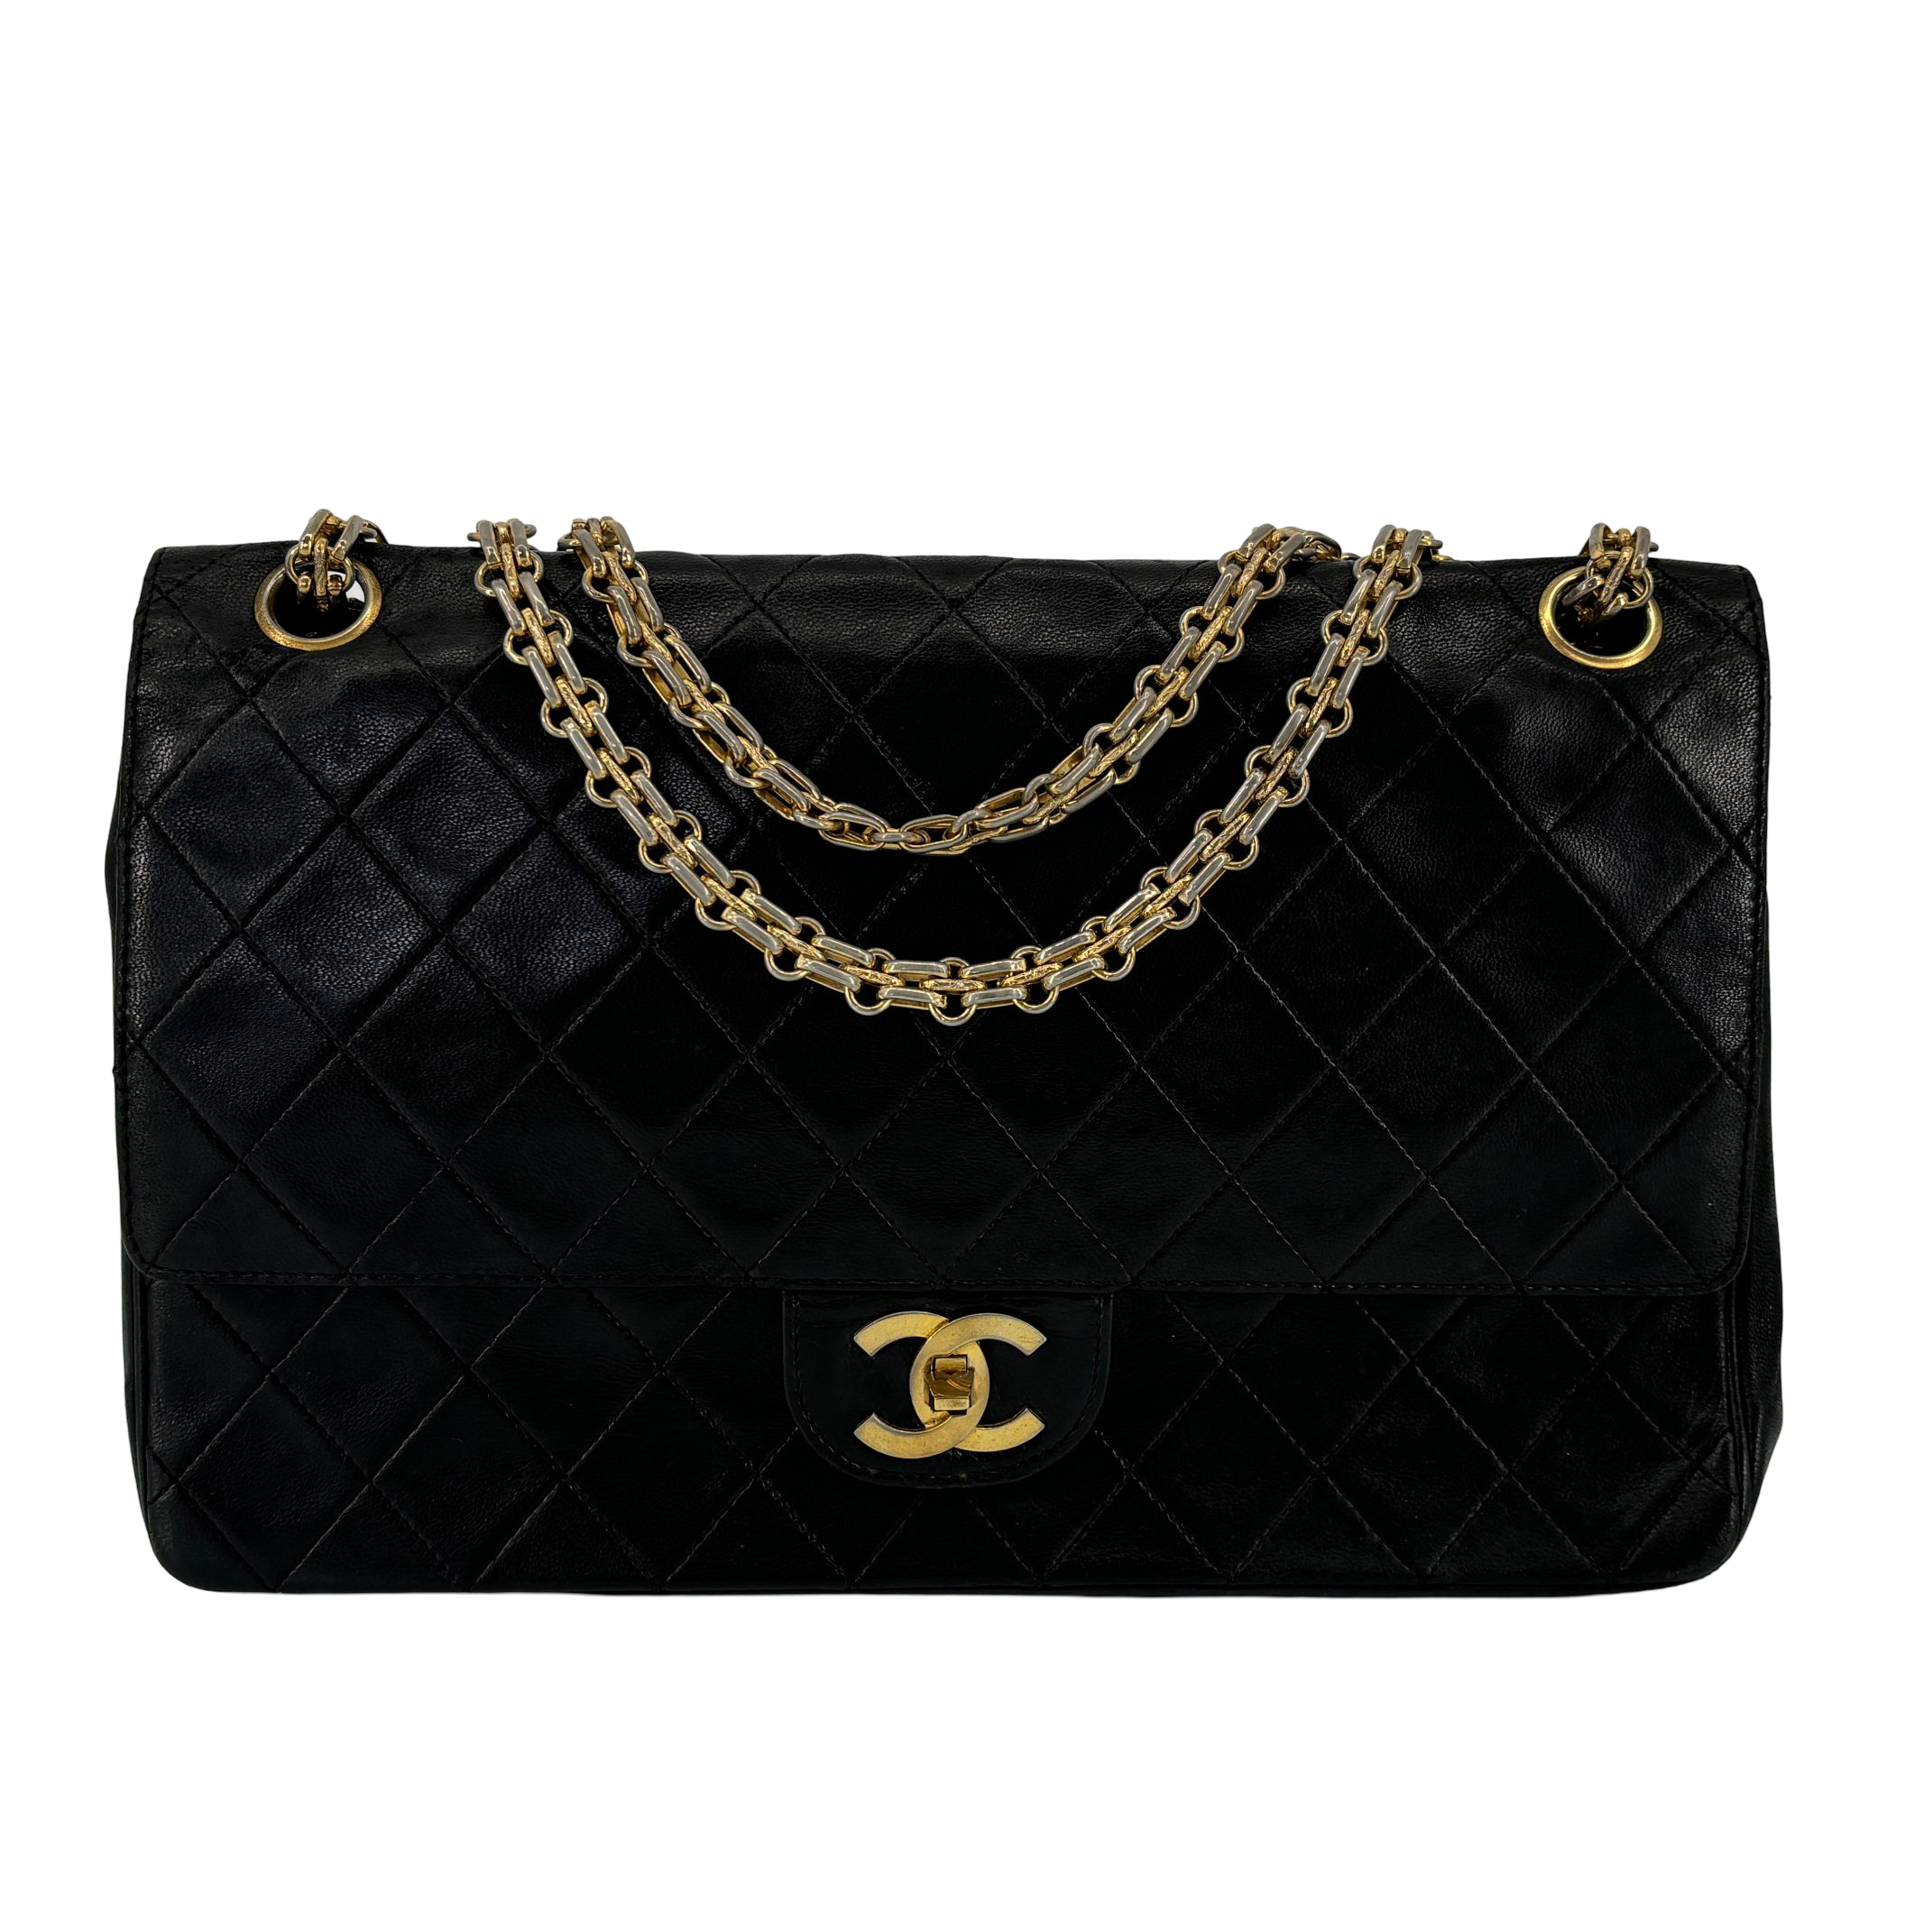 Chanel Timeless / Classique Double Flap Bag Black Matelassé Leather Medium